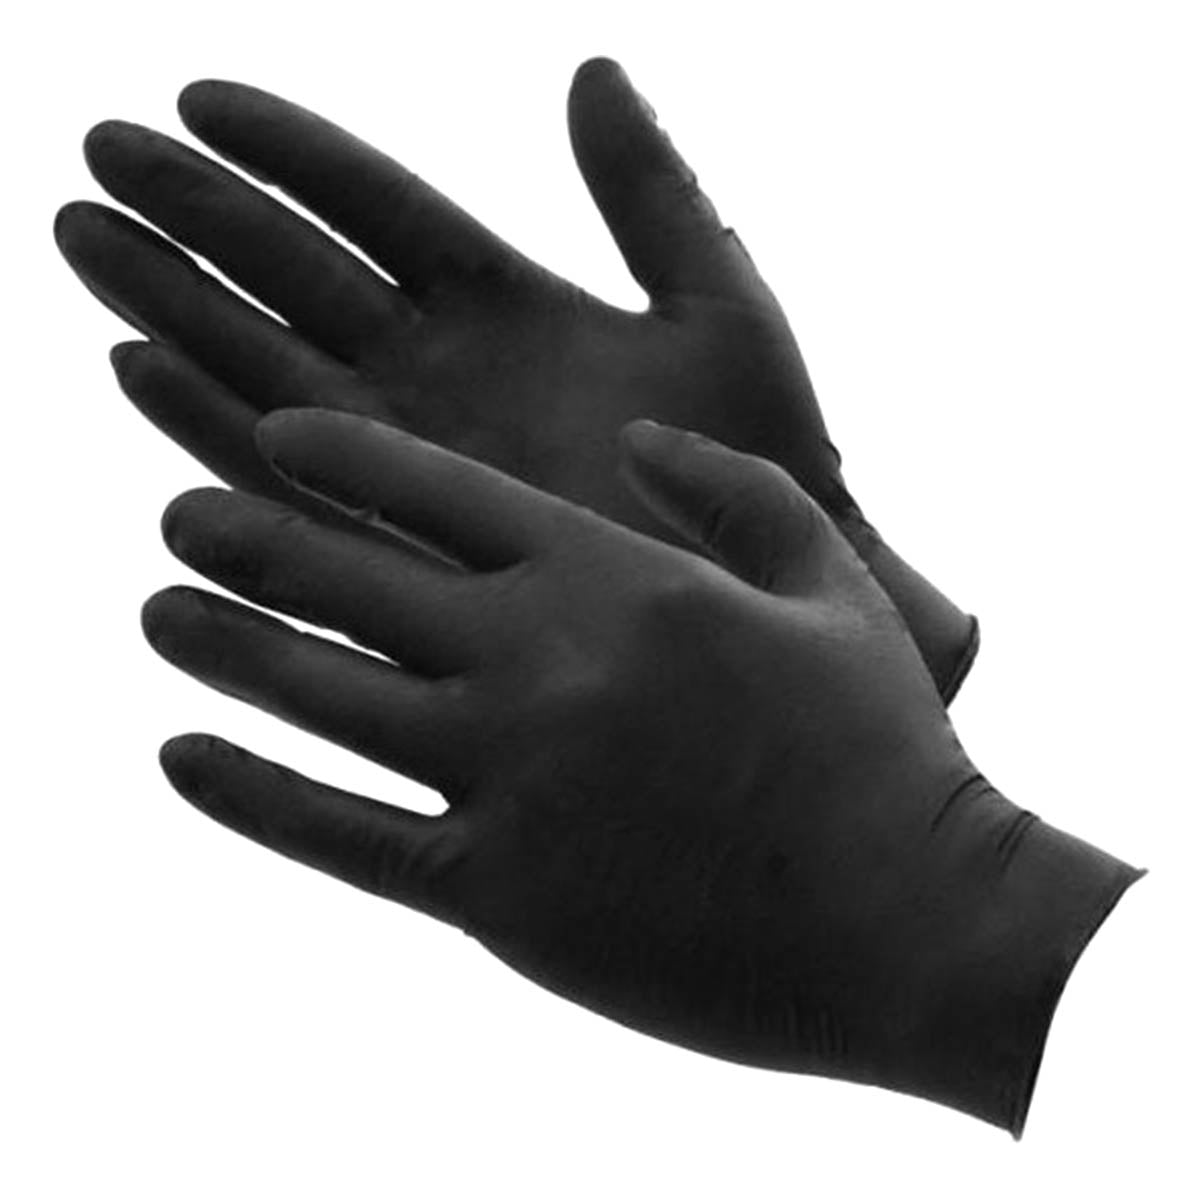 Medische Wegwerp Handschoenen - Maat M - 100 STUKS - Categorie 3 - Soft-Nitril - Poedervrij - Latex Vrij - Zwart - Ariko